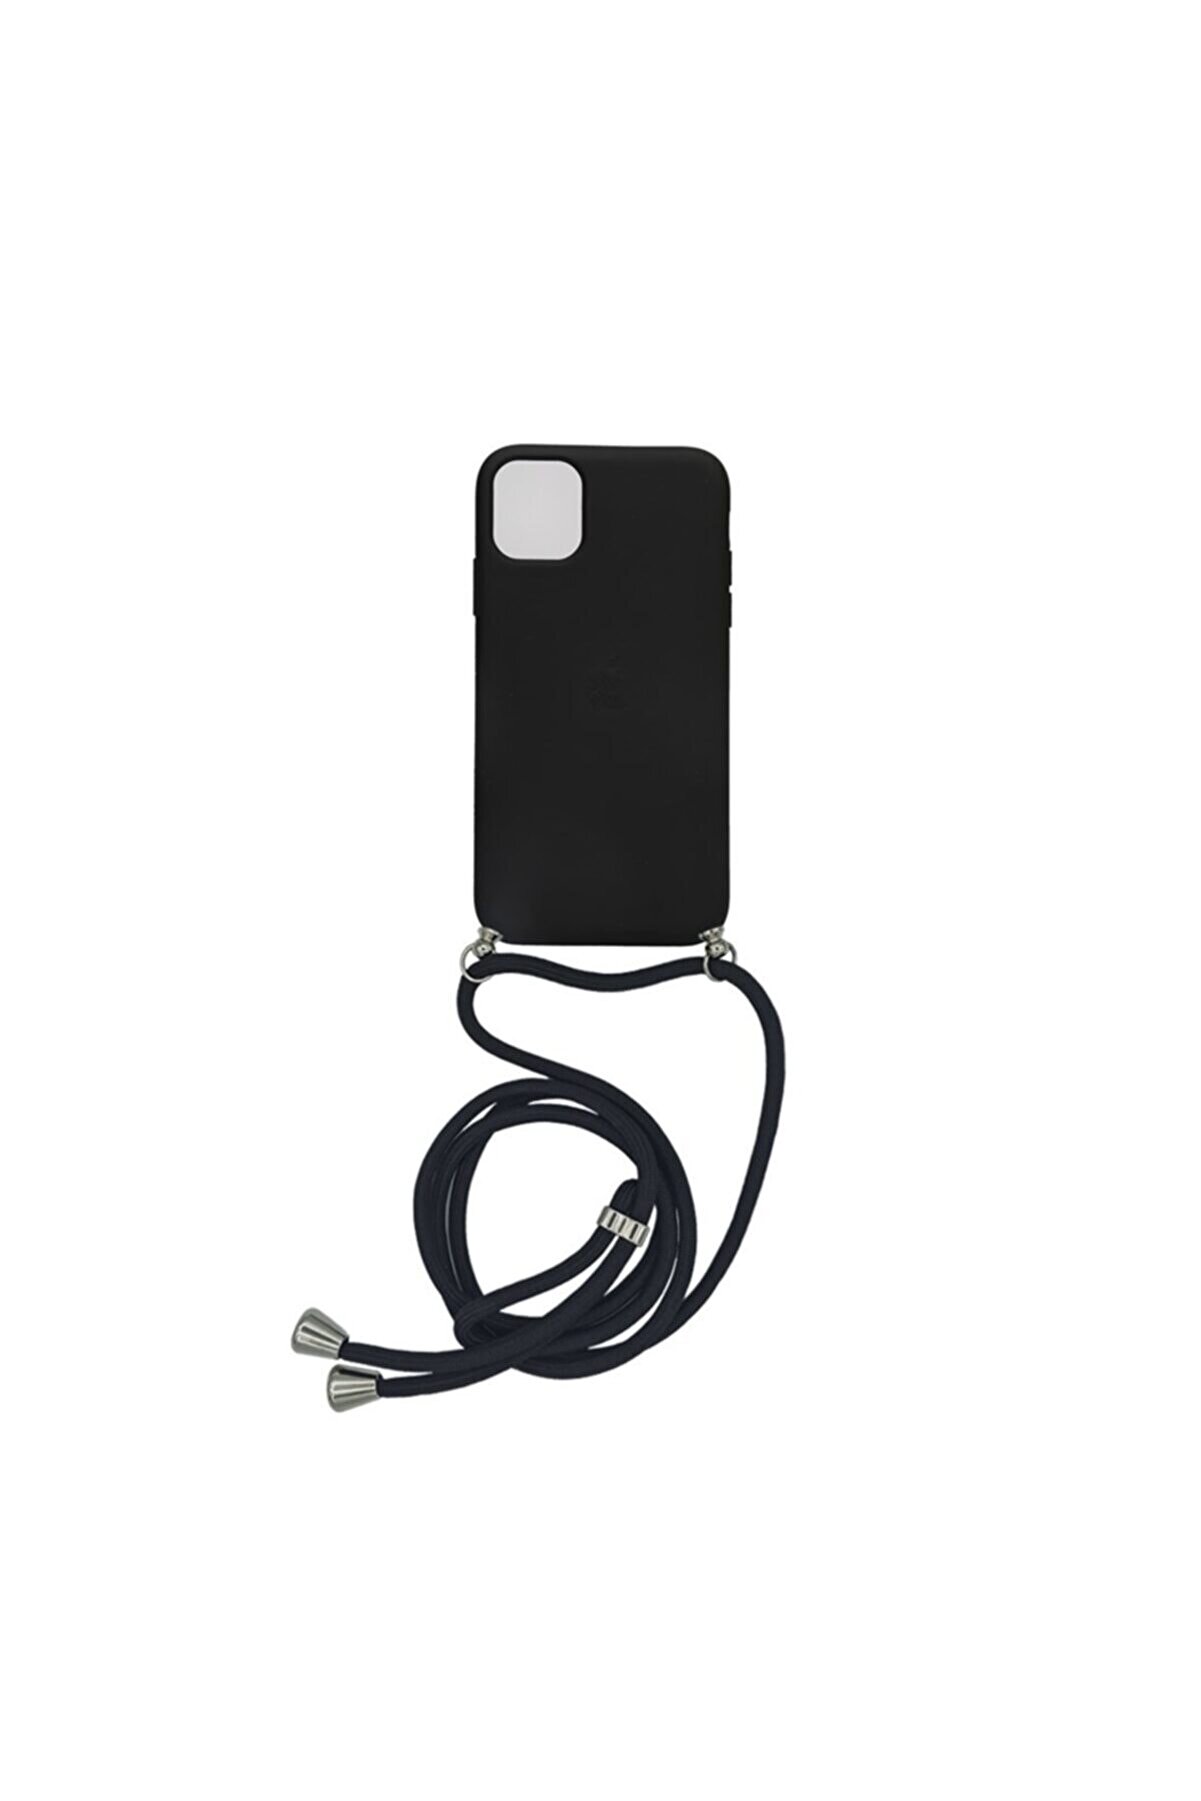 Merwish Apple Iphone 11 Pro (5.8') Altı Kapalı Boyun Askılı Logolu Lansman Kılıf Kapak Siyah